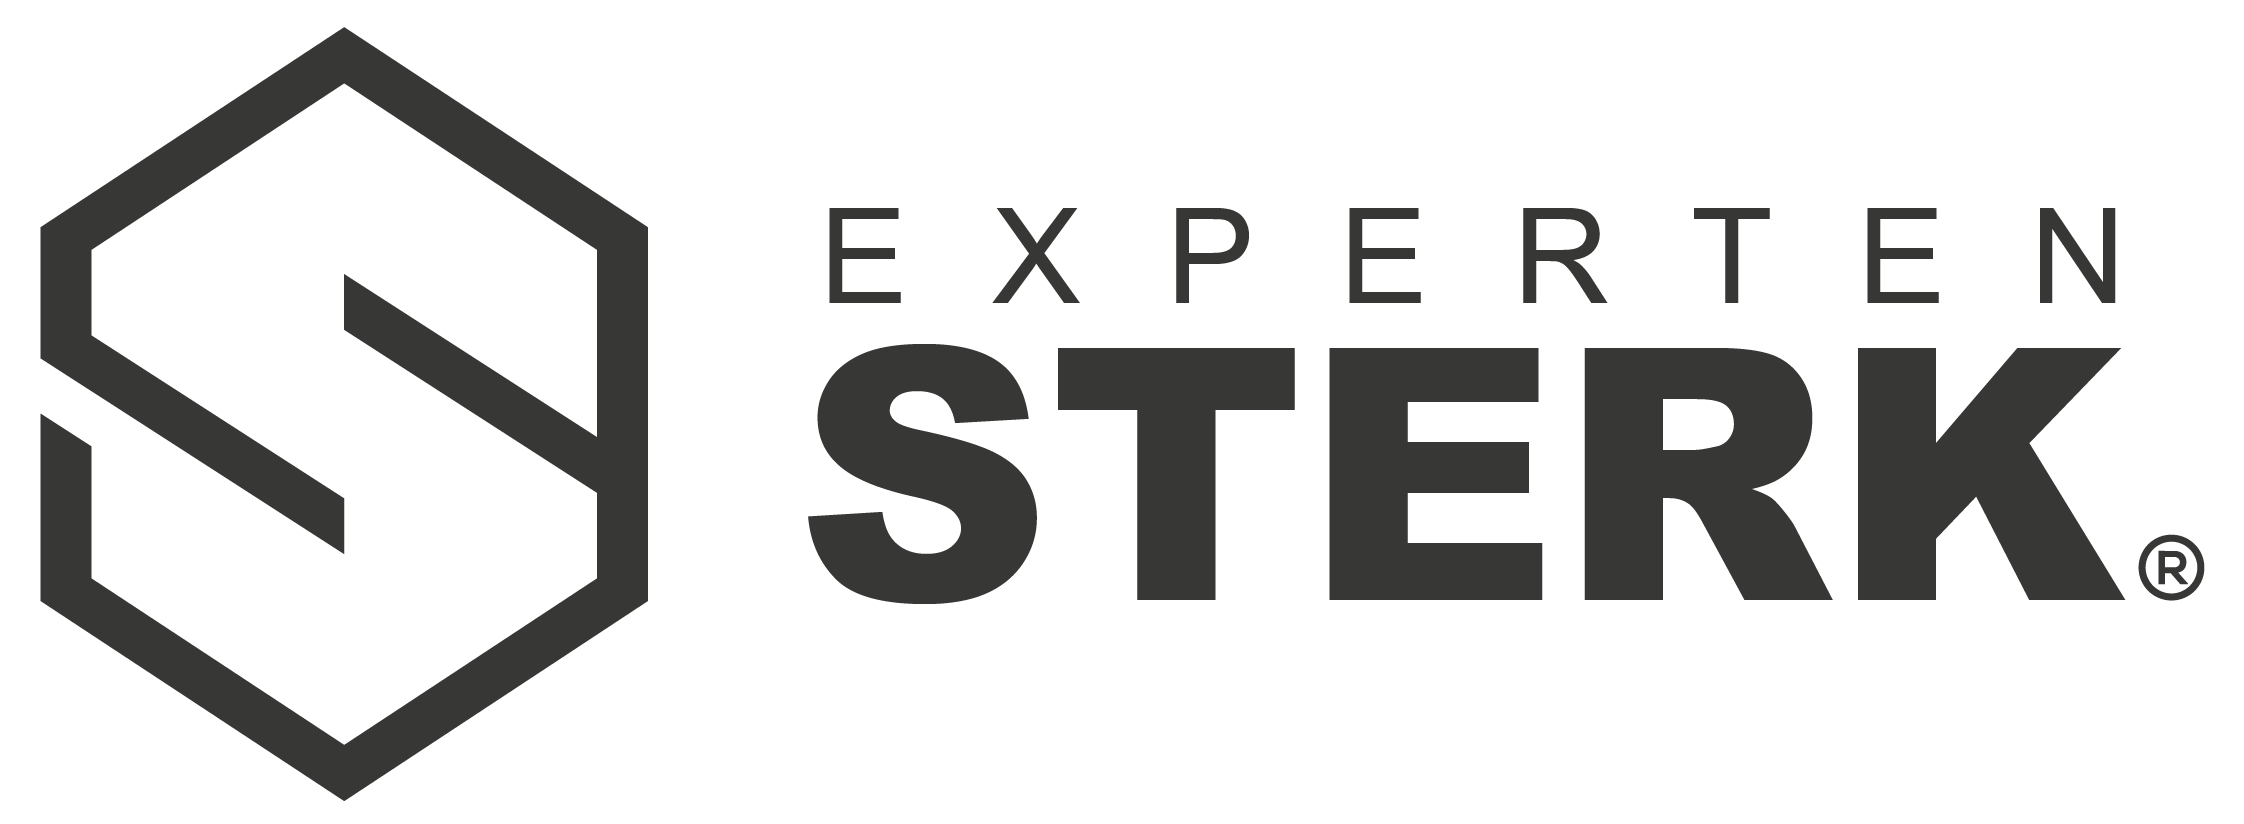 Sterk_expert_logo-01